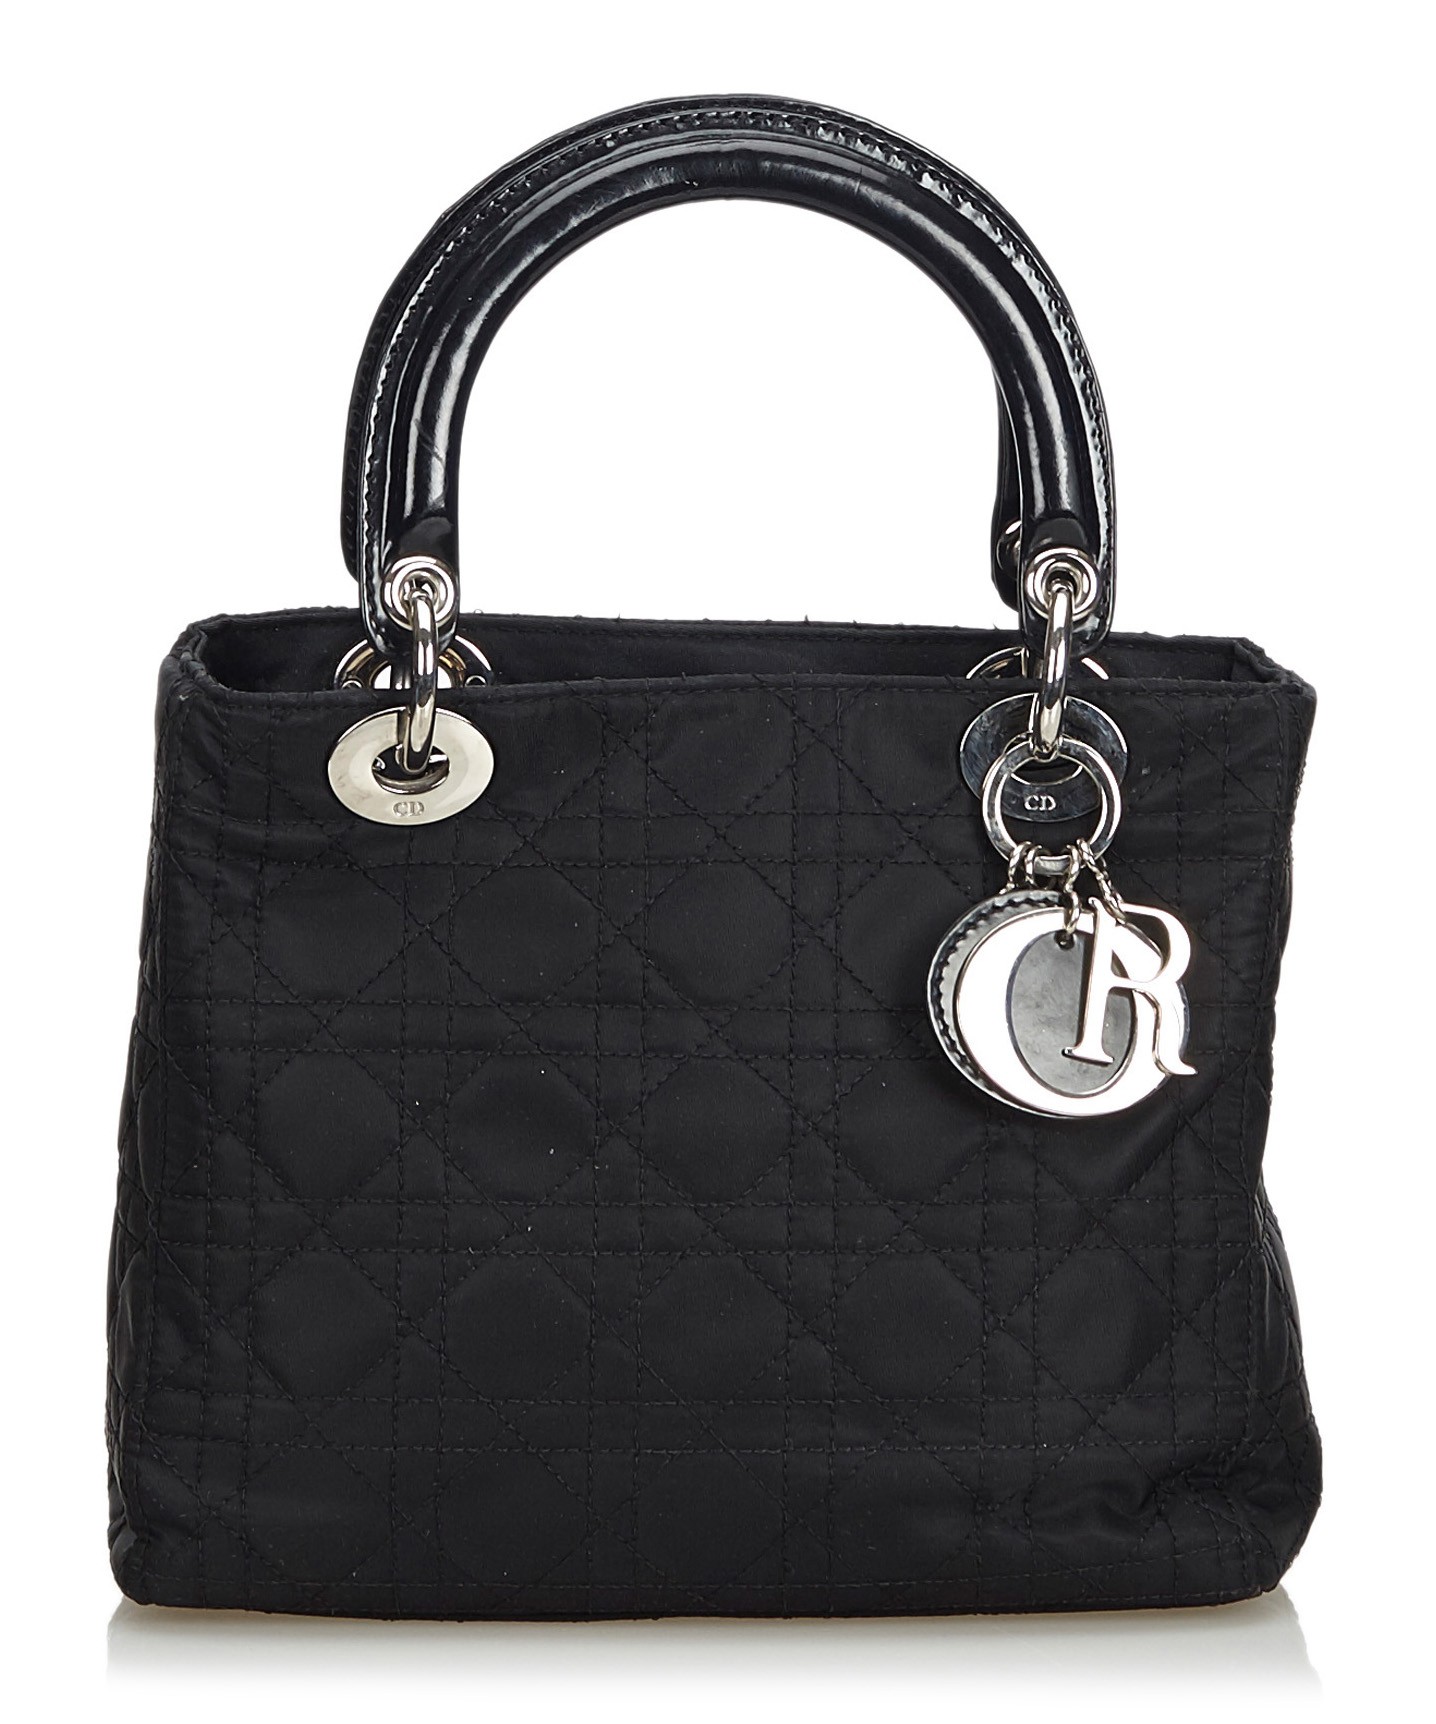 lady dior purse